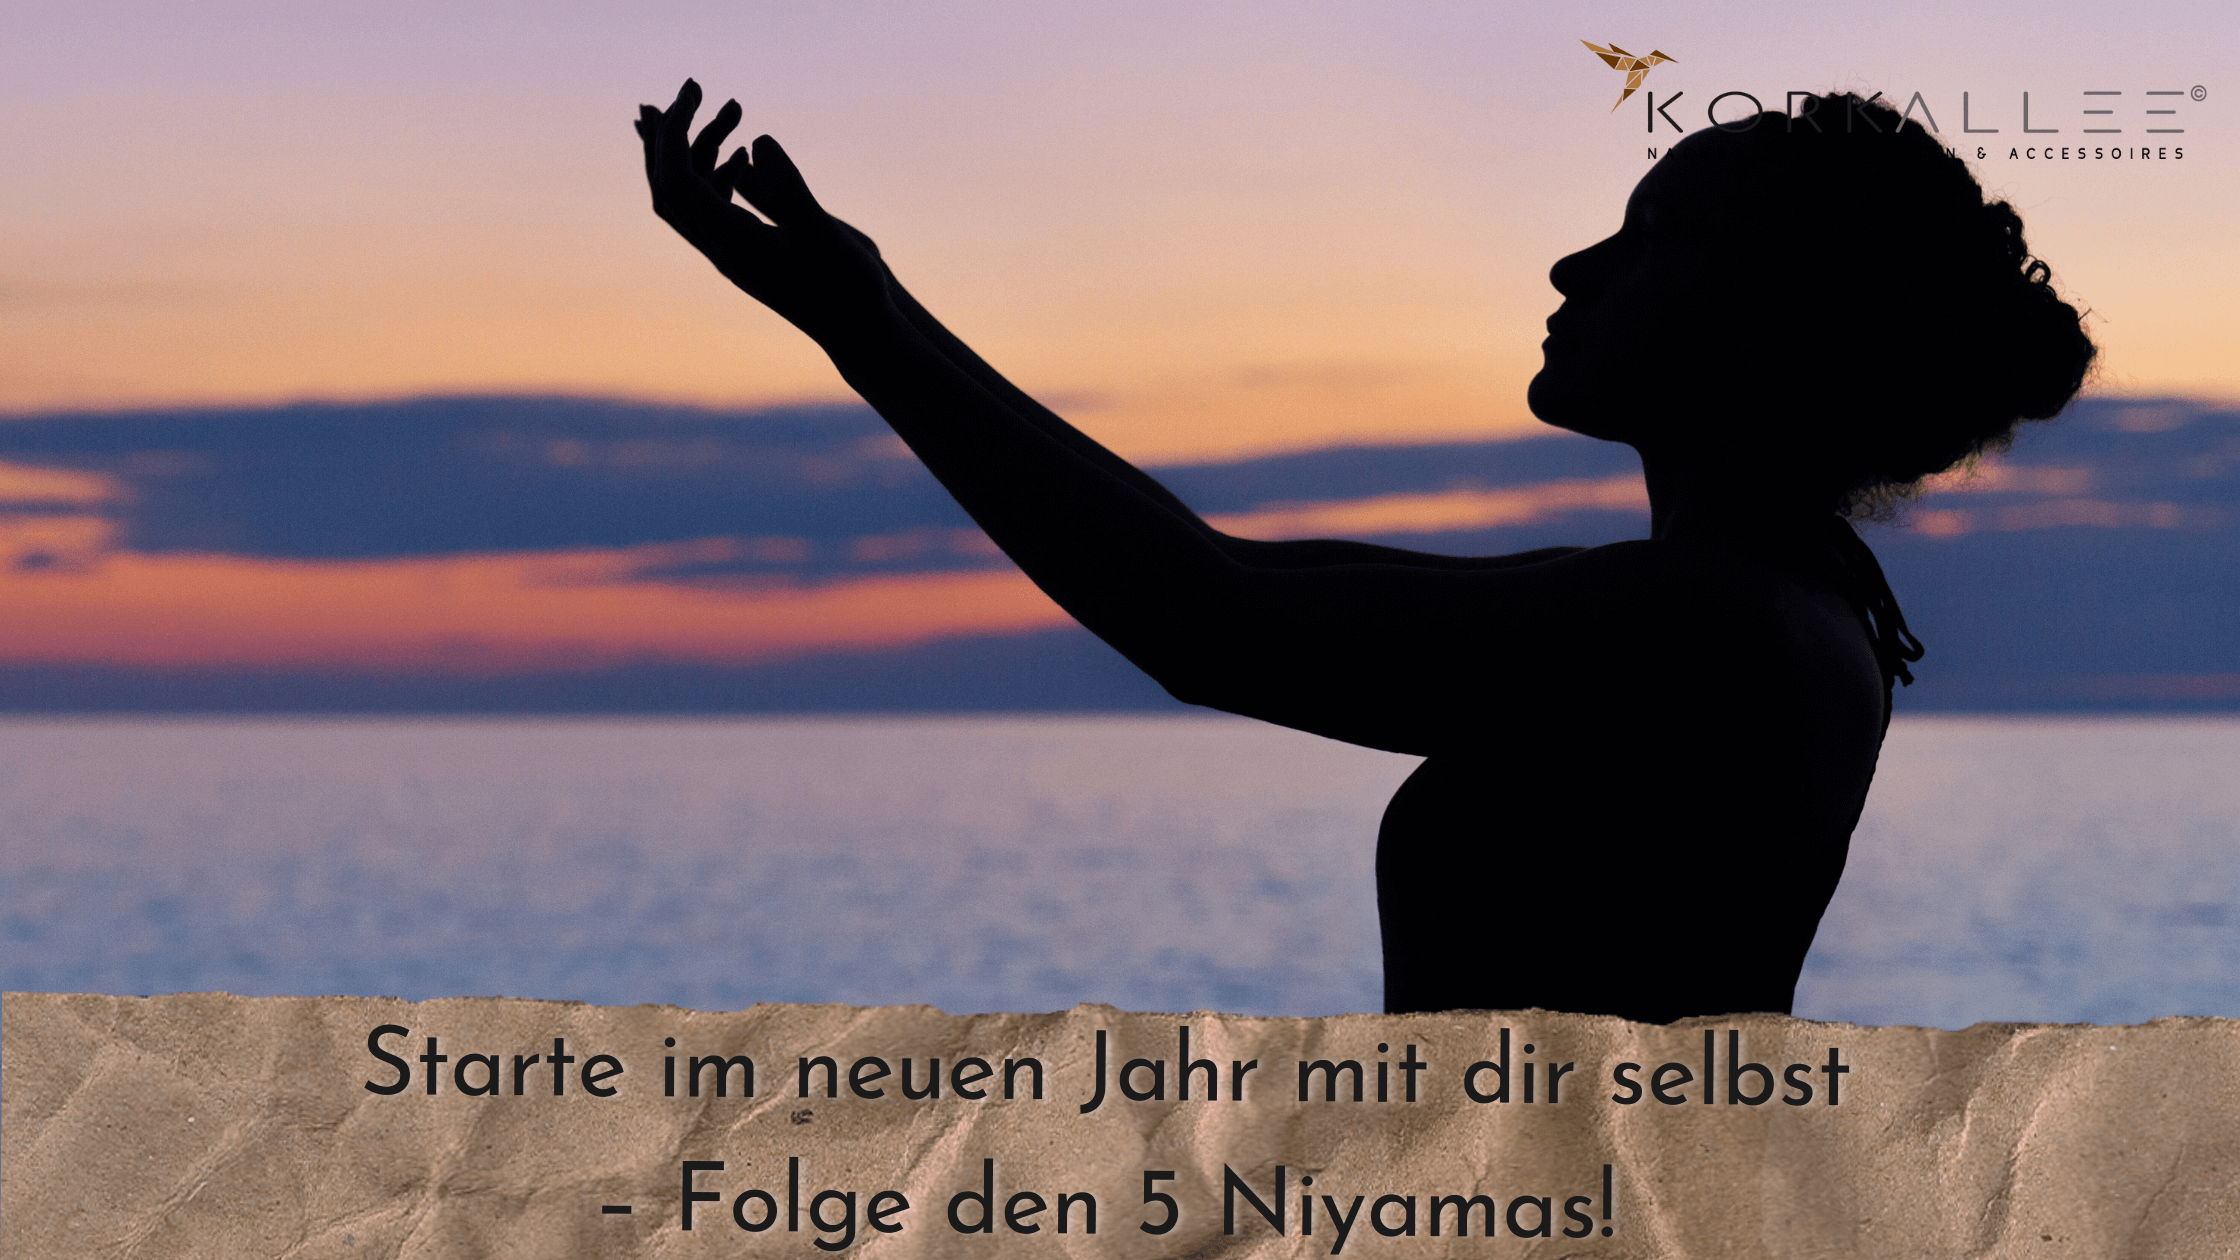 Starte im neuen Jahr mit dir selbst – Folge den 5 Niyamas! 